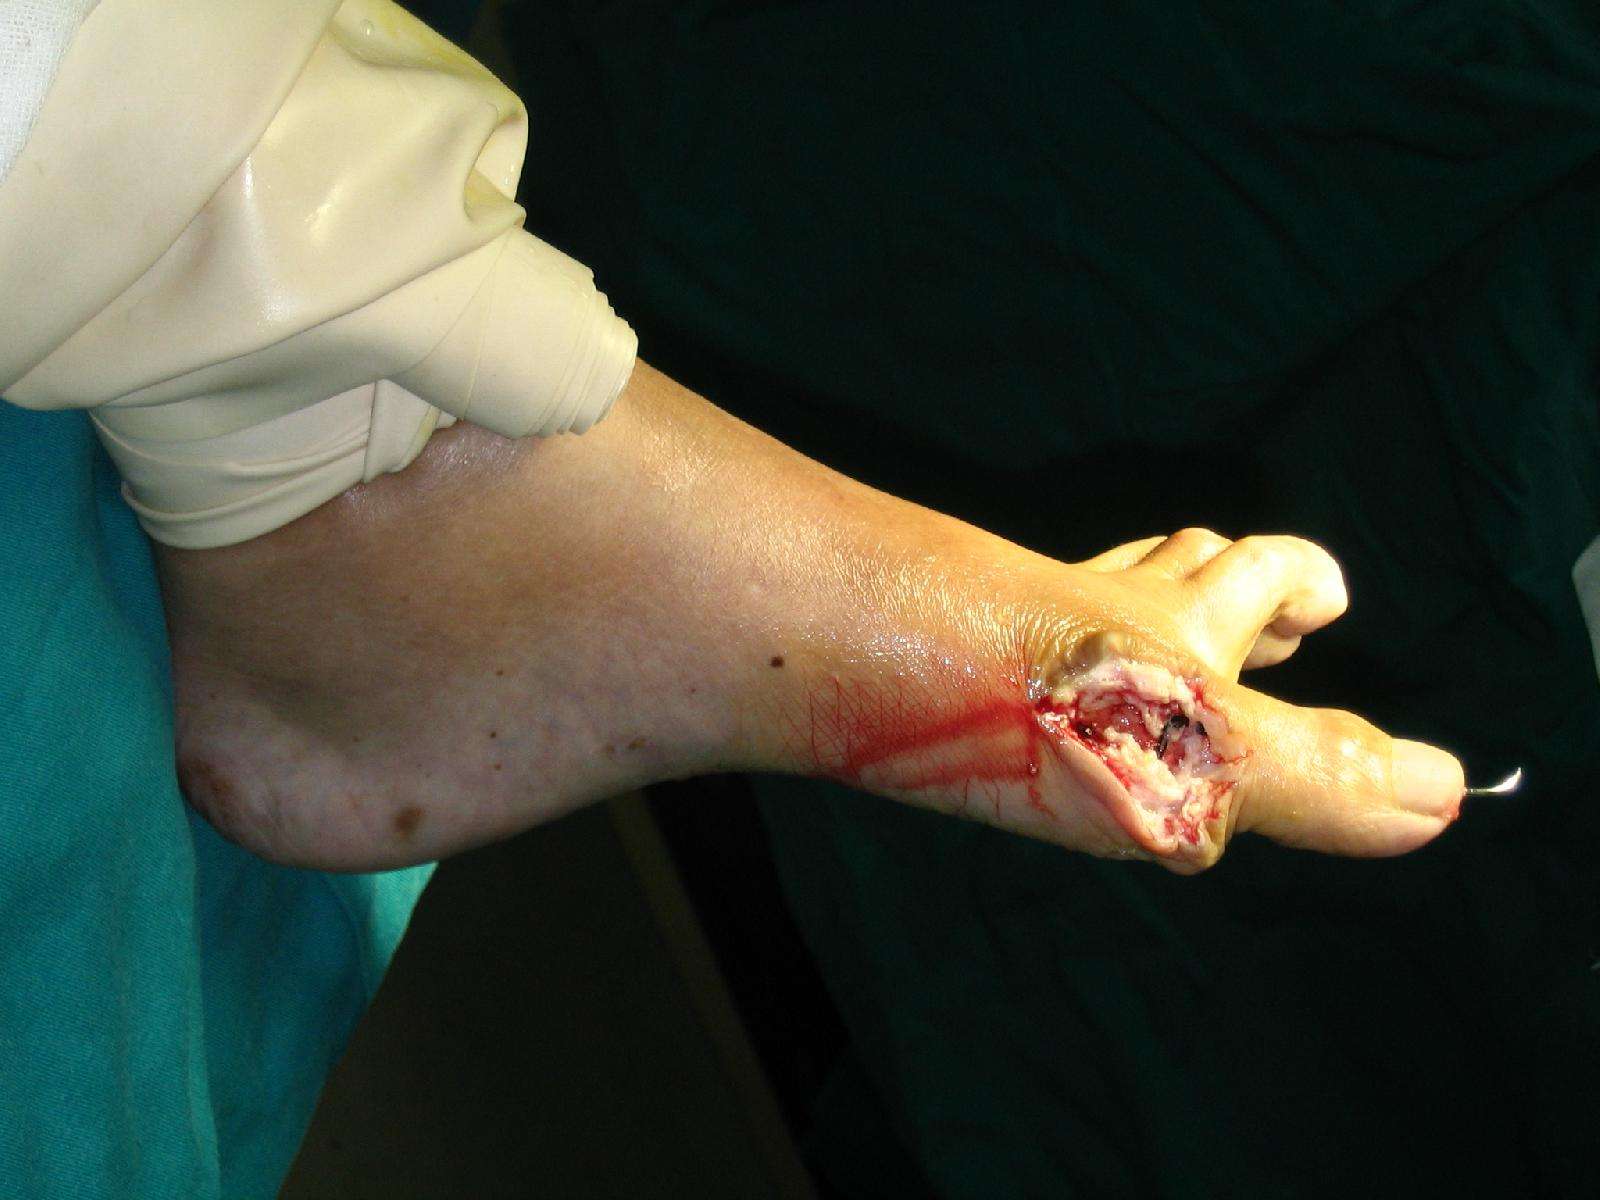 大脚骨手术过程图片